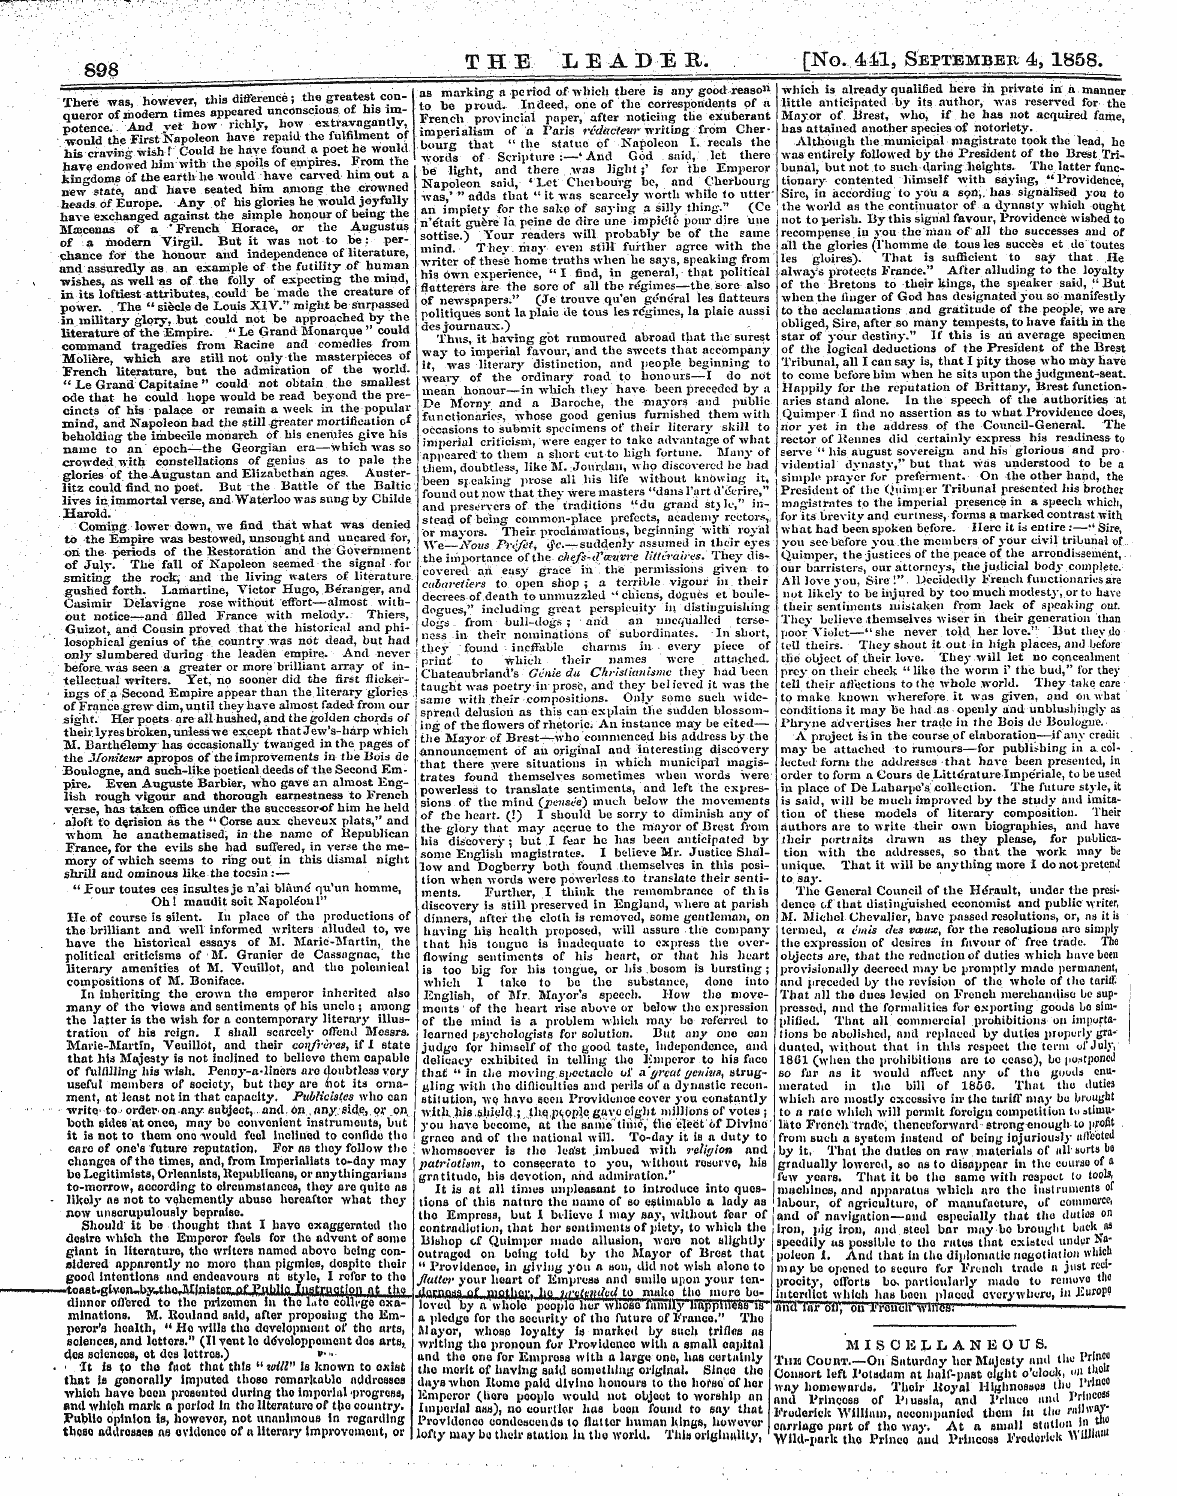 Leader (1850-1860): jS F Y, 2nd edition - Here In S9b The L E A Pe B. [Ko. ,4-11, ...